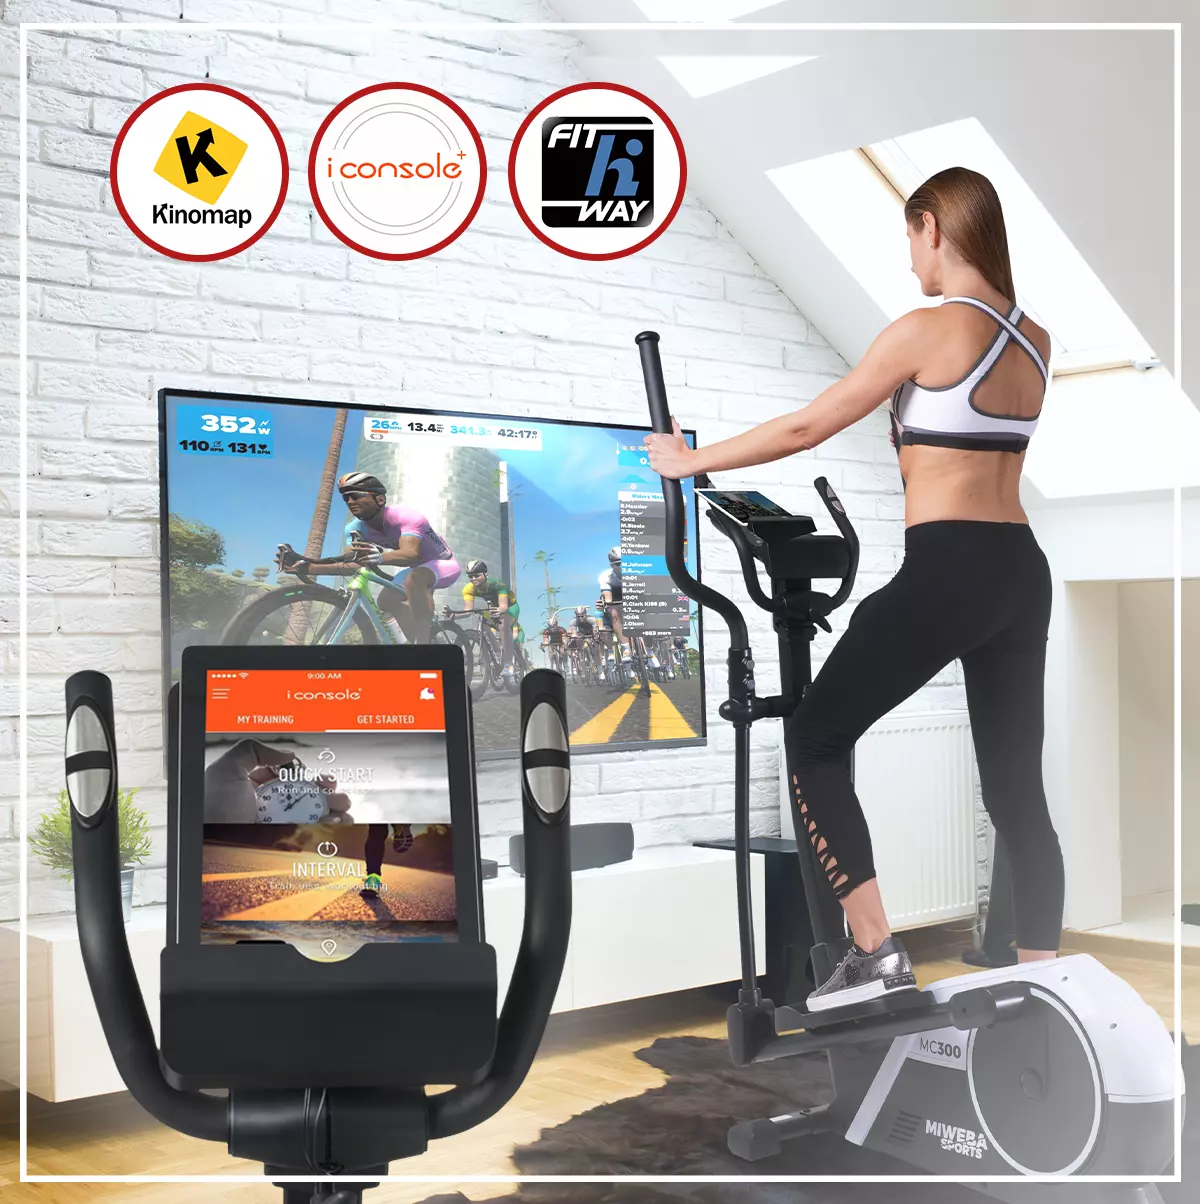 Frau trainiert auf dem Fitnessgerät und schaut dank App virtuelles Rennen auf dem TV